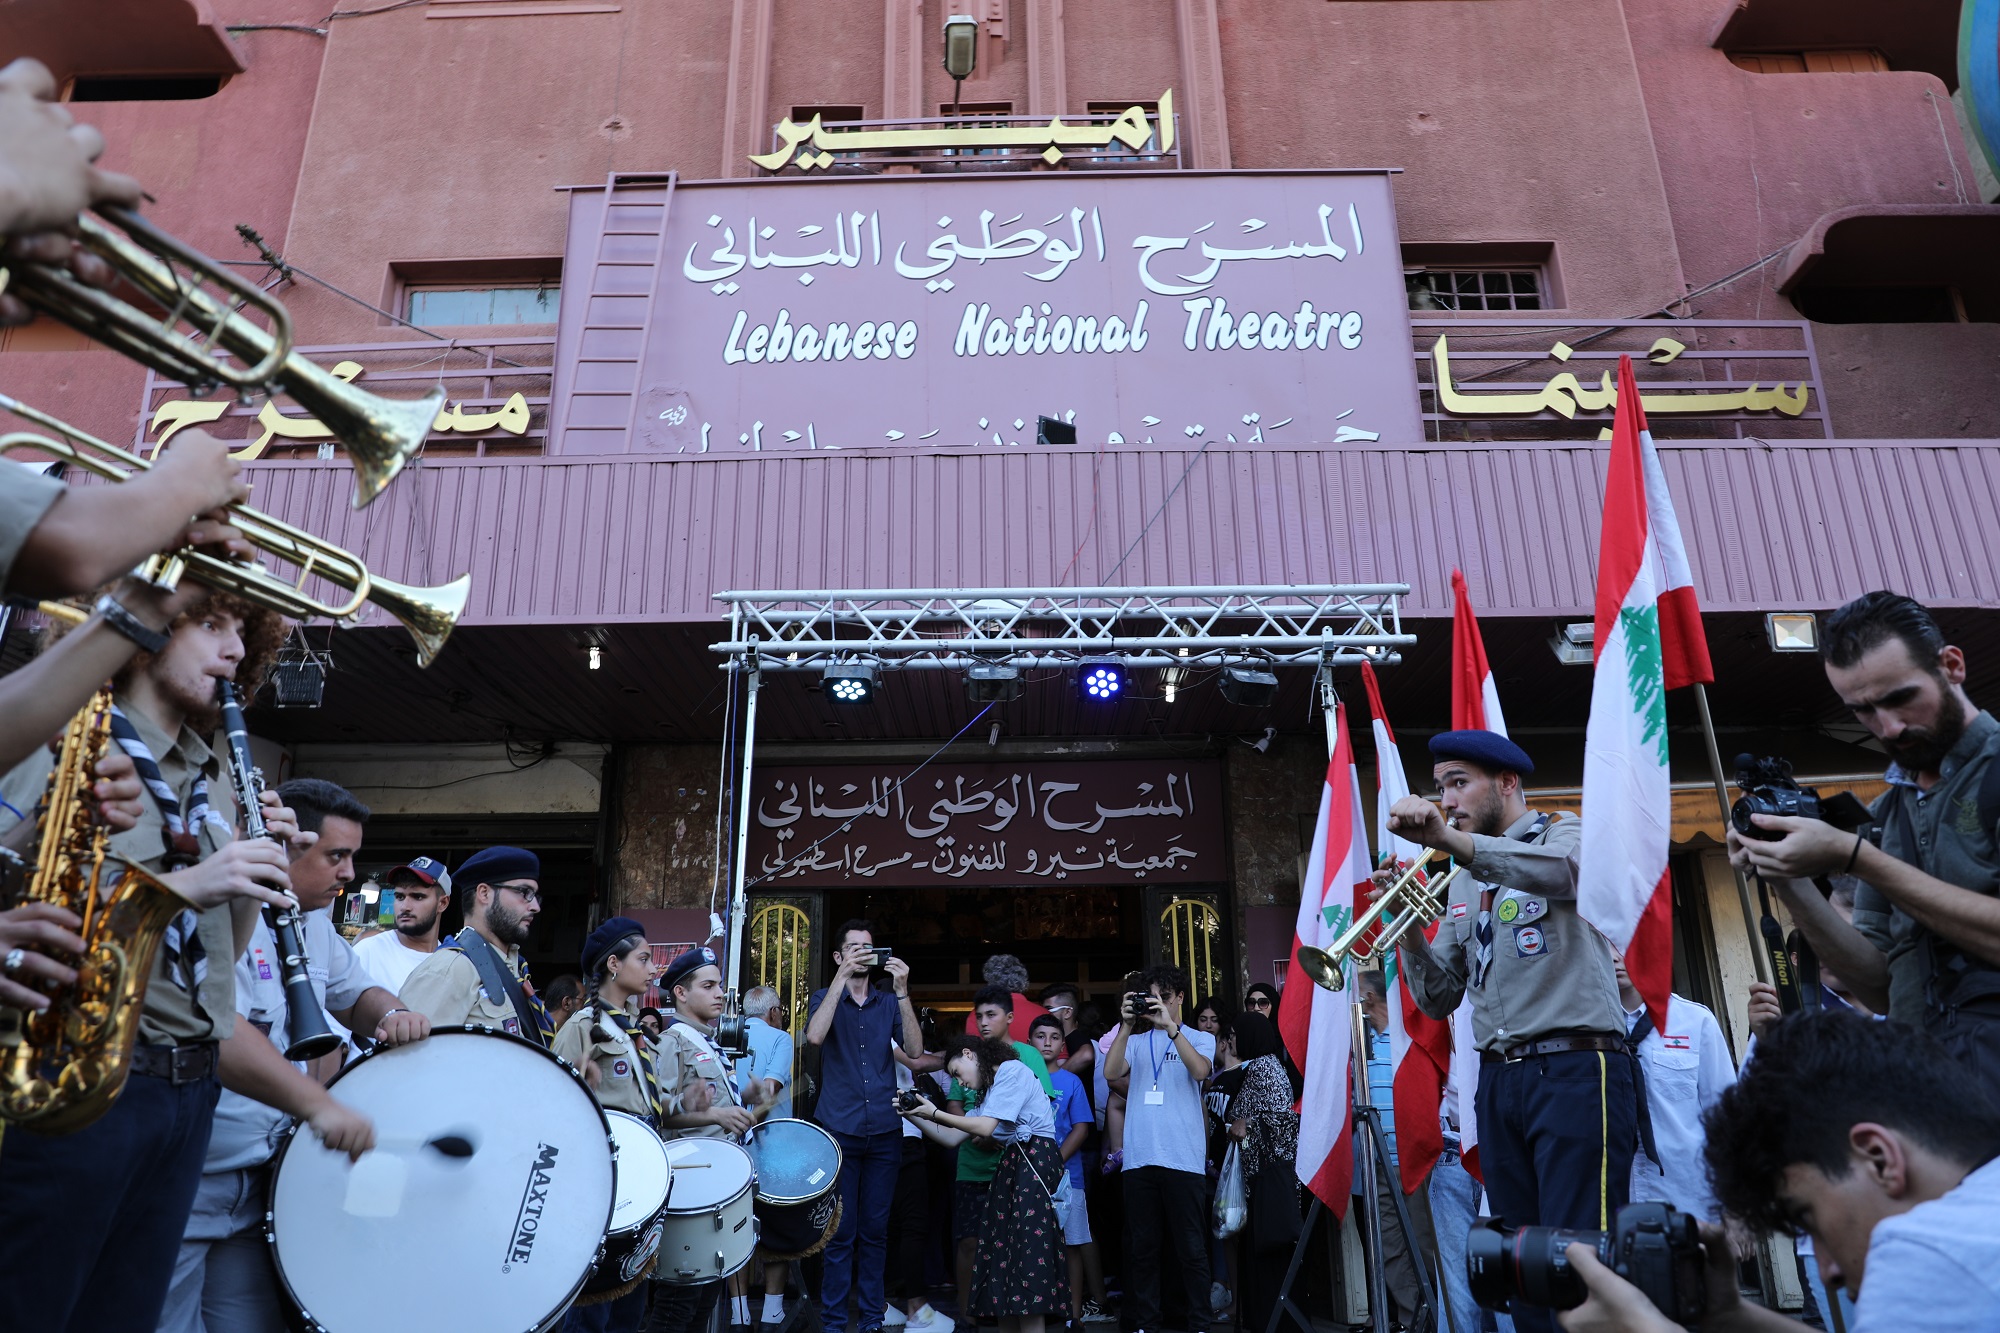 مهرجان لبنان المسرّحيّ الدّوليّ للحكواتي في المسرح الوطني اللبناني